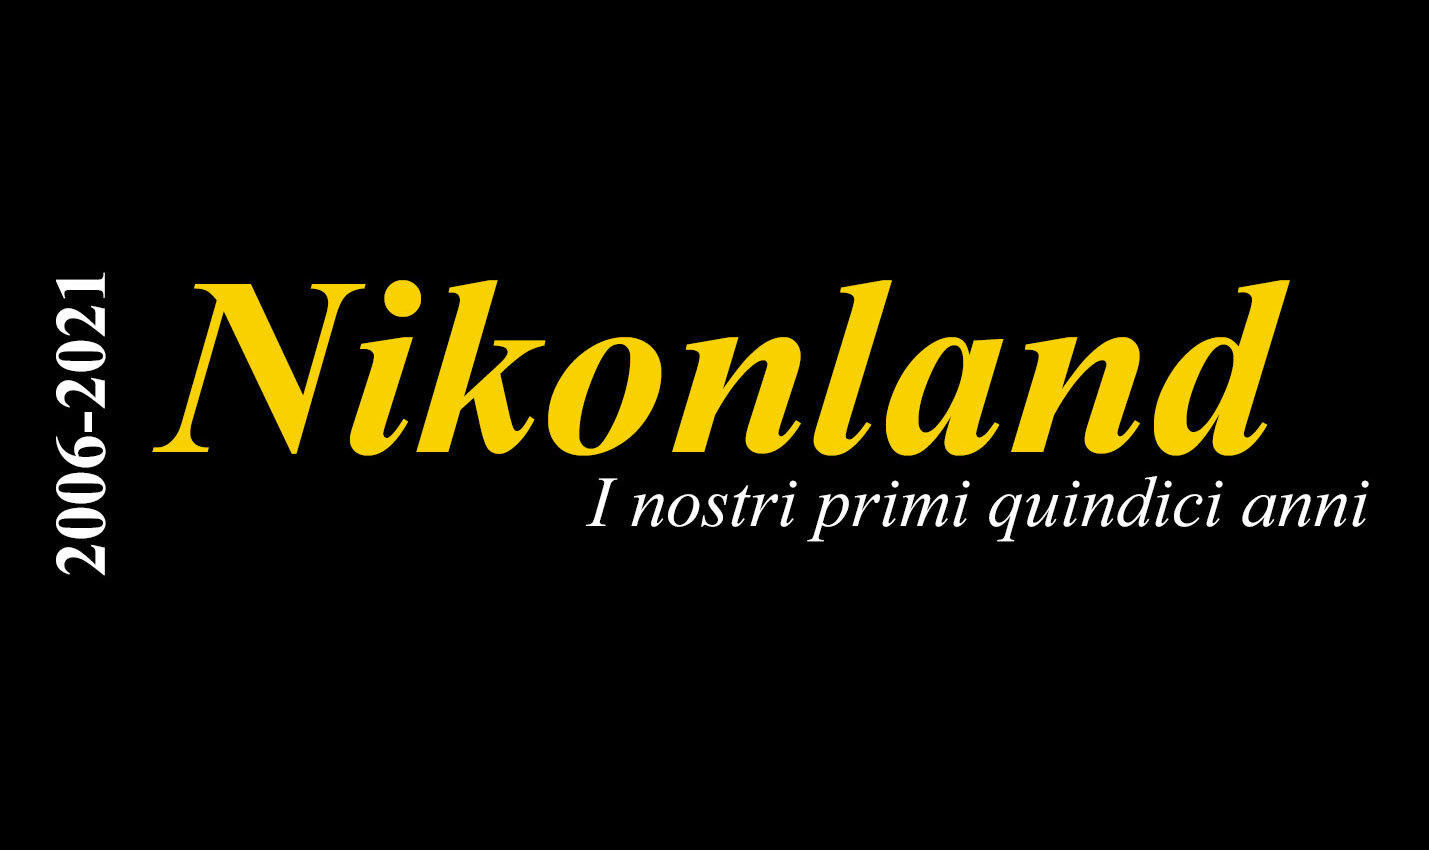 Maggiori informazioni su "Nikonland : i nostri primi quindici anni"